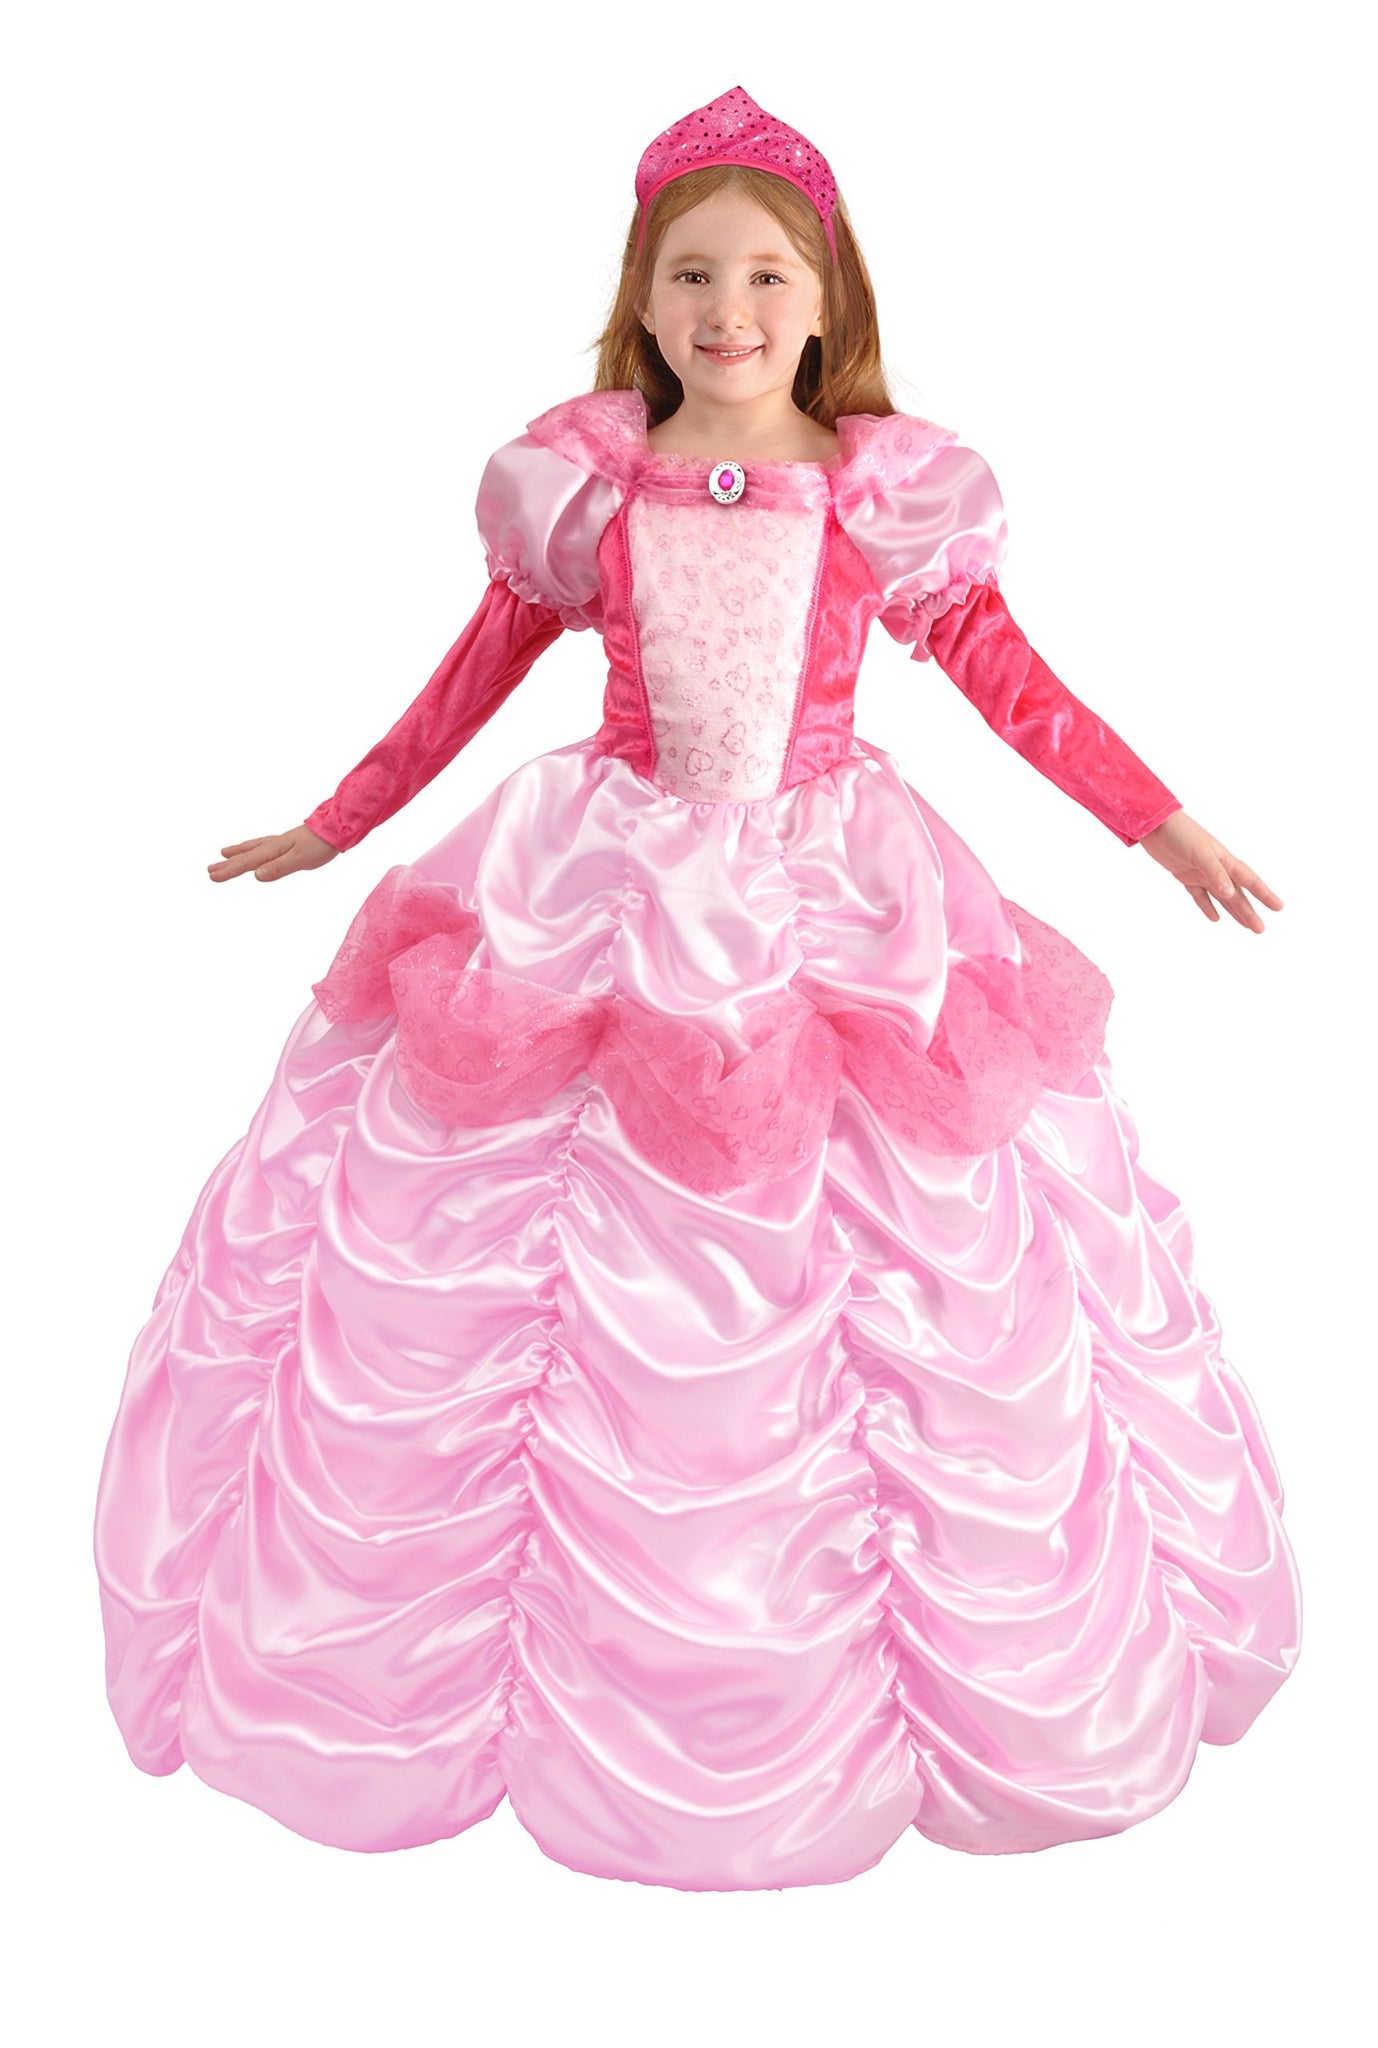 Ciao- Principessa d'Austria Costume Carnevale per Bambini, 8-10 anni,. –